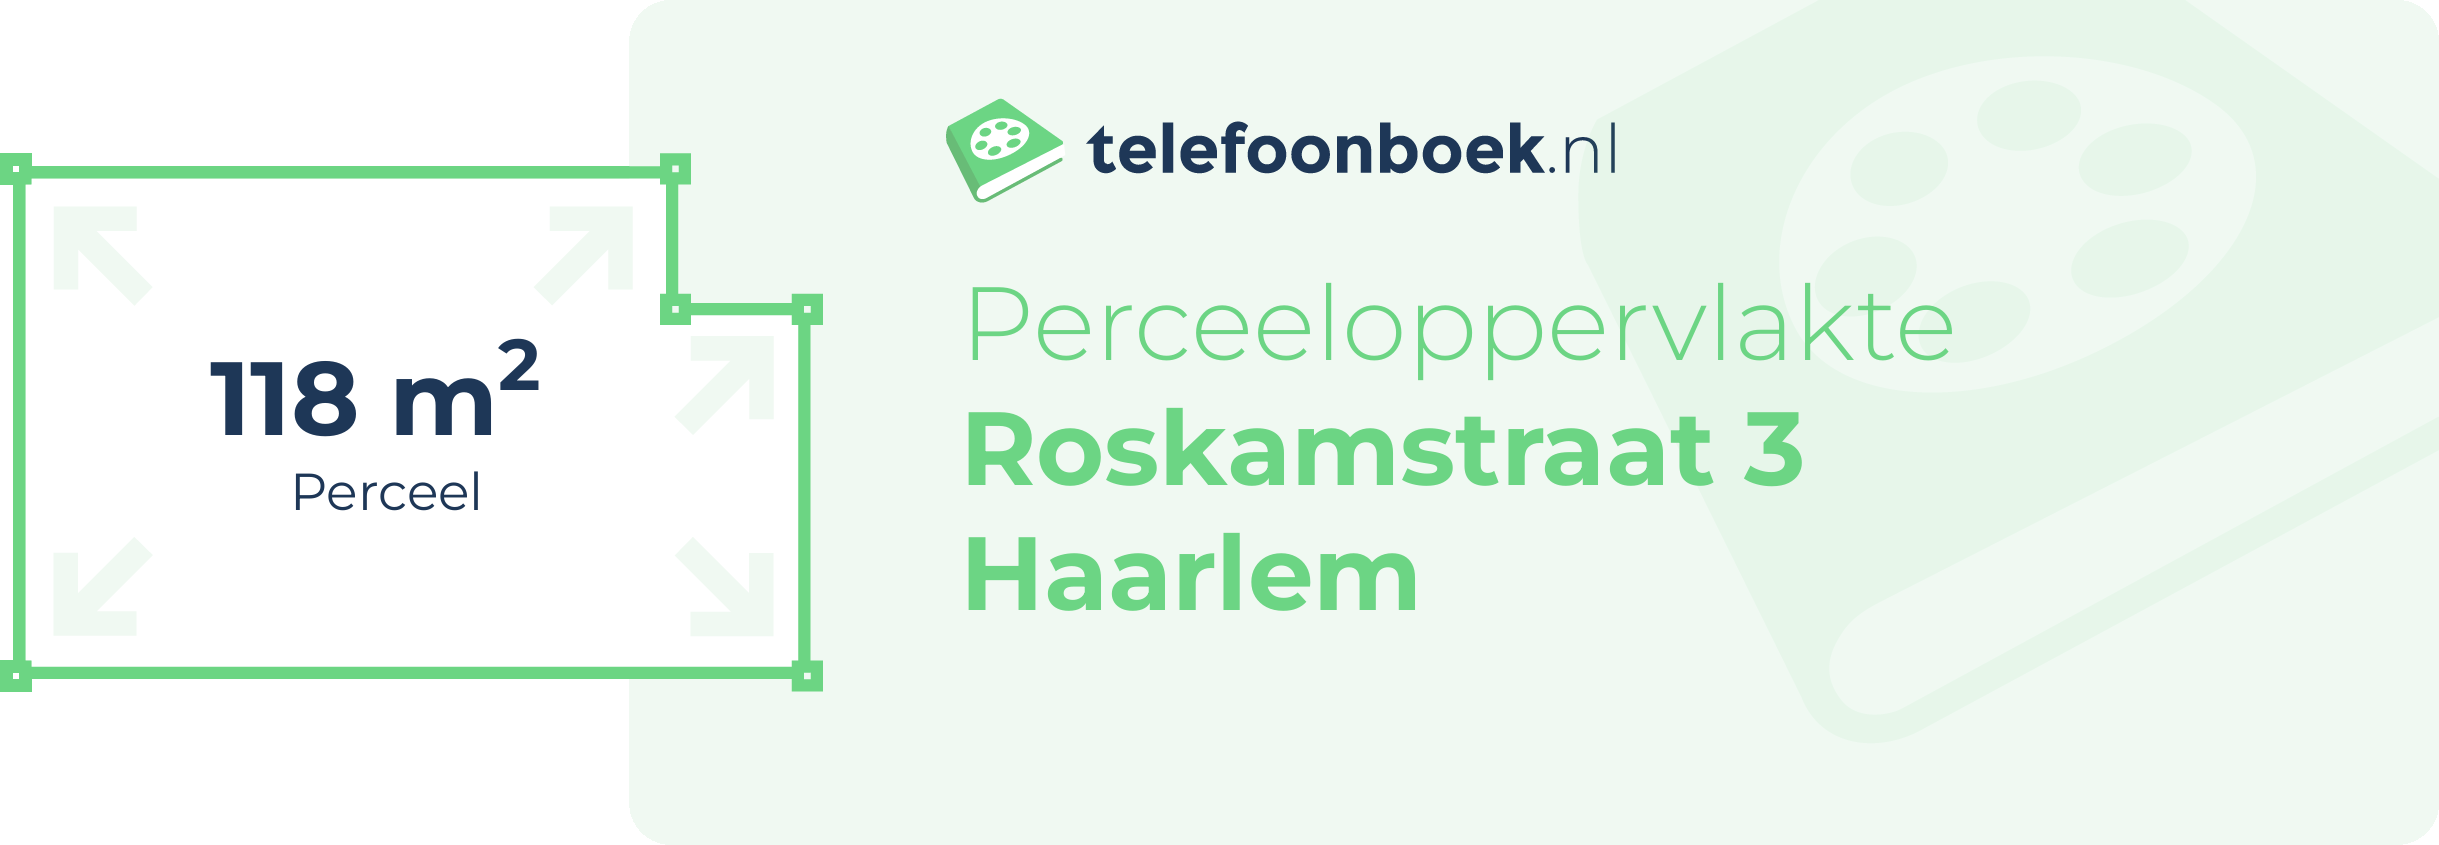 Perceeloppervlakte Roskamstraat 3 Haarlem